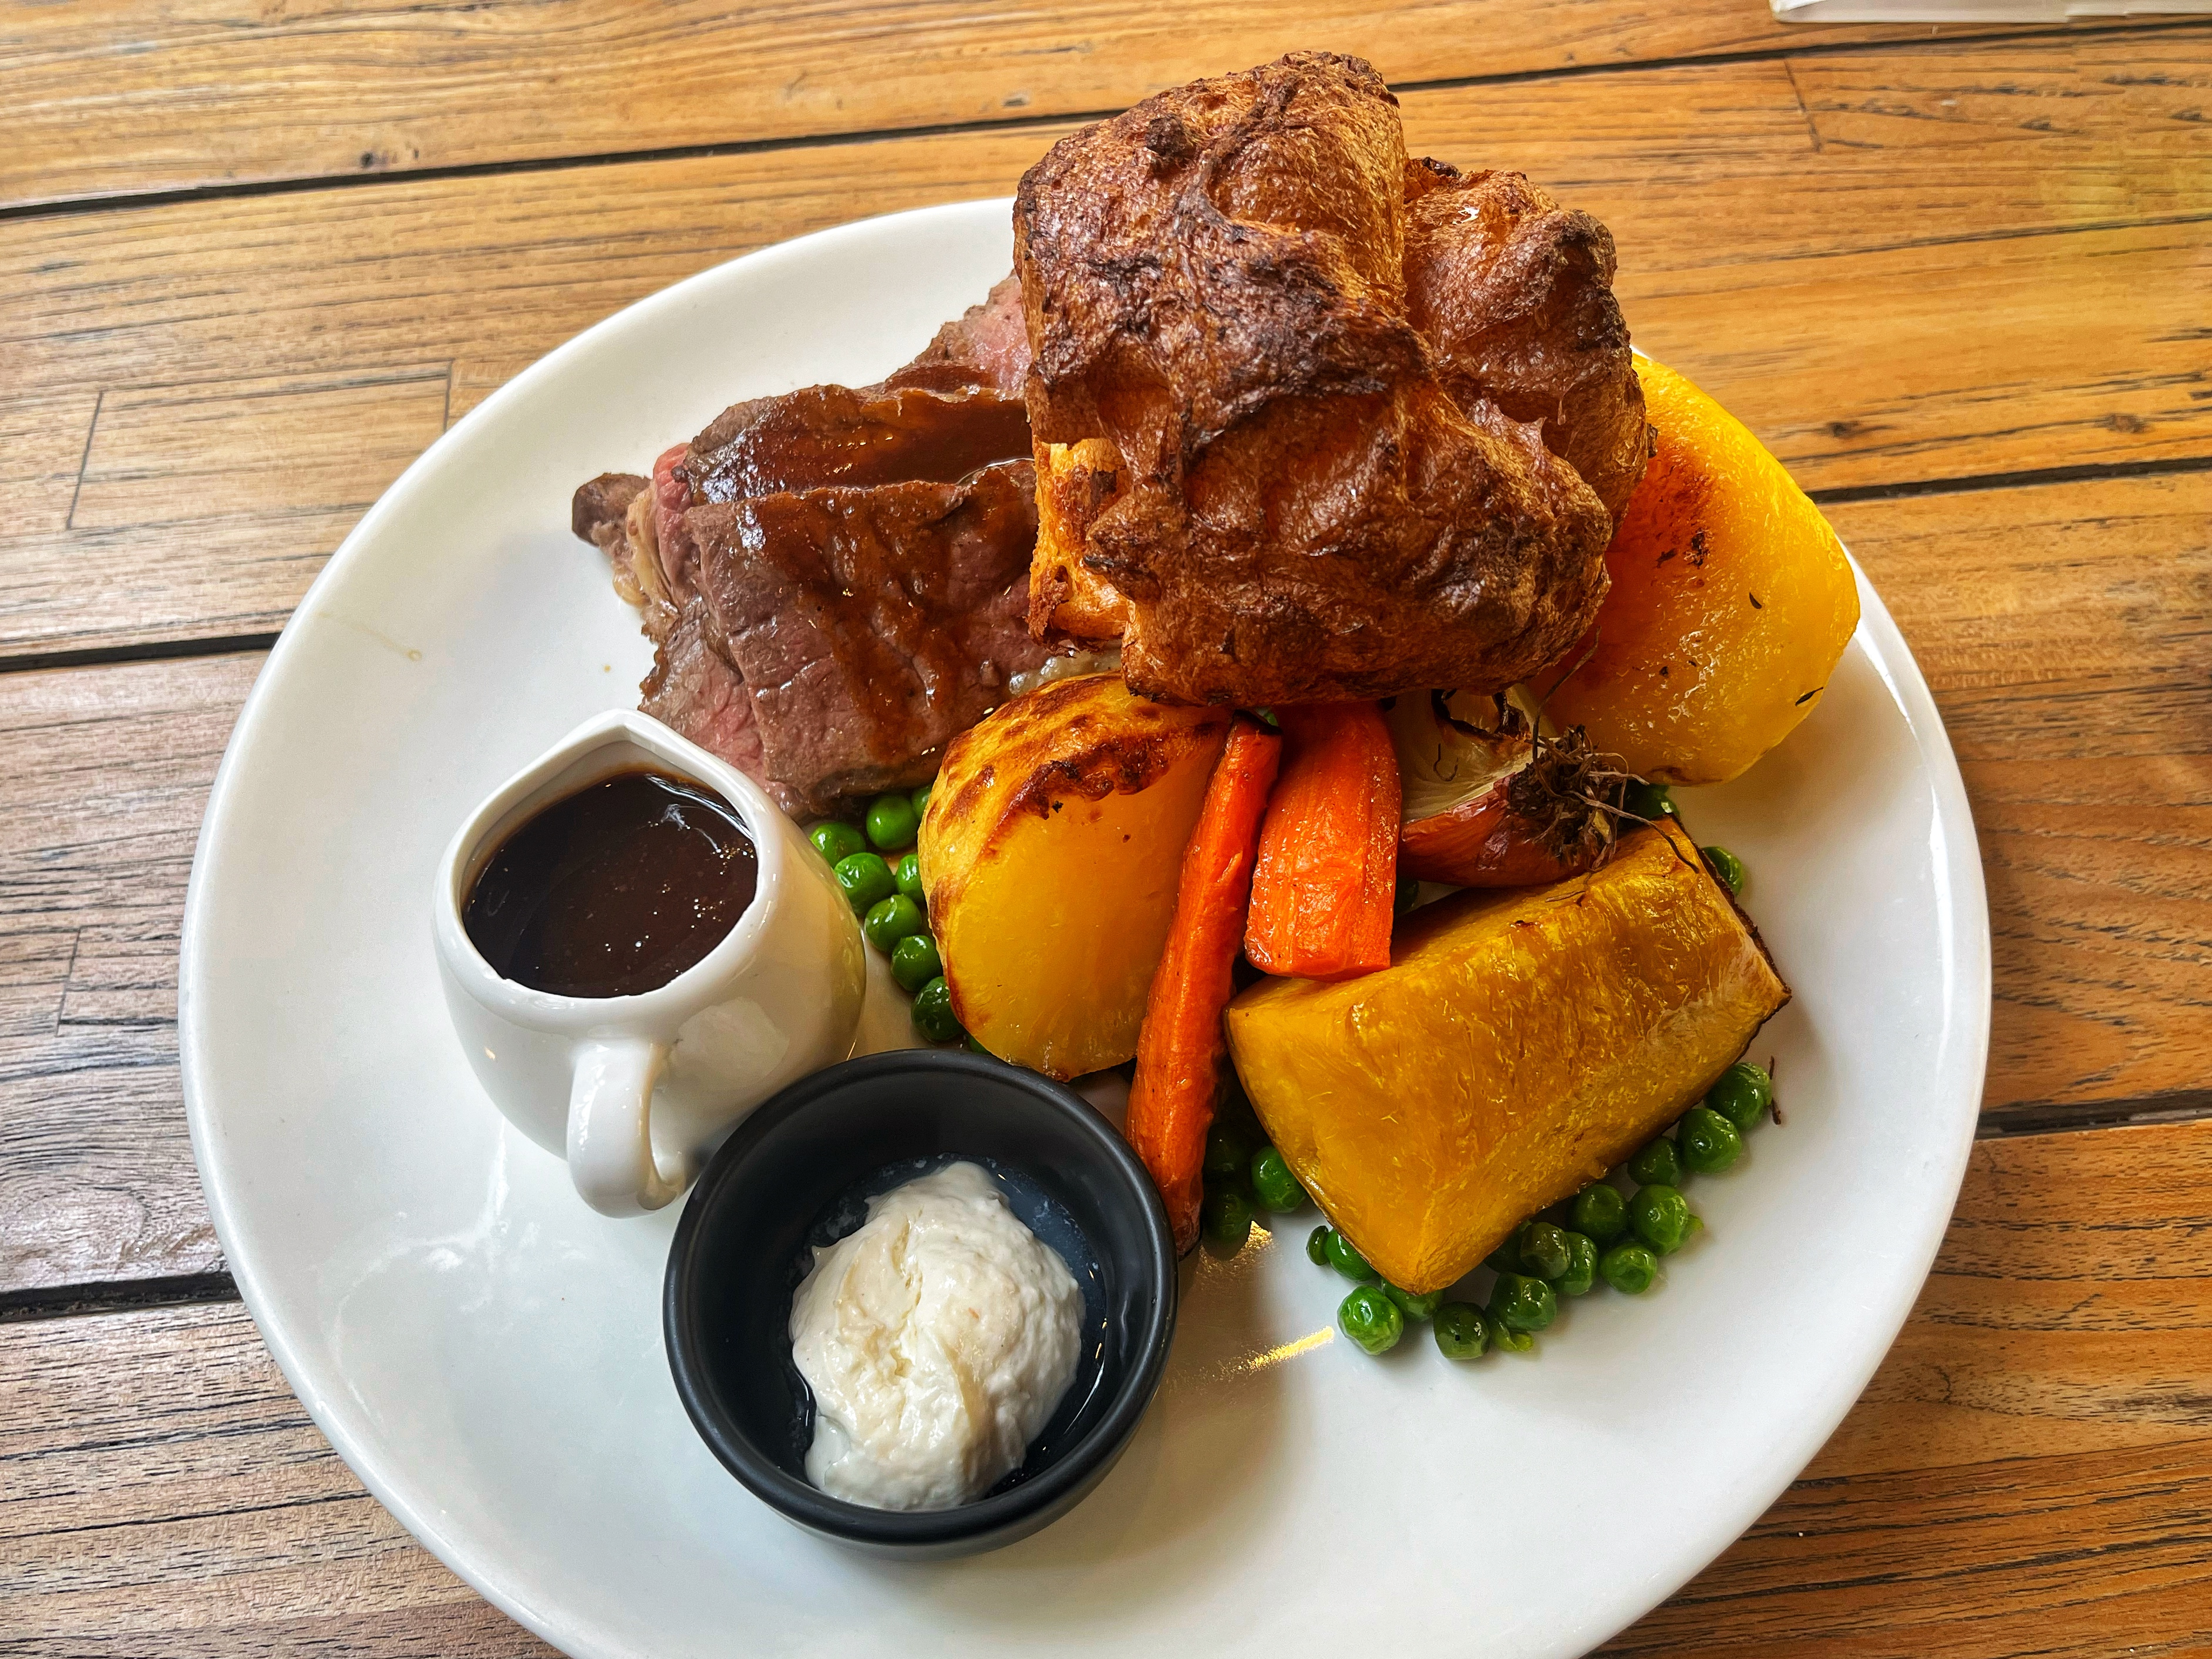 Kai New Zealand's Sunday Roast with Roast Beef and Yorkshire Pudding